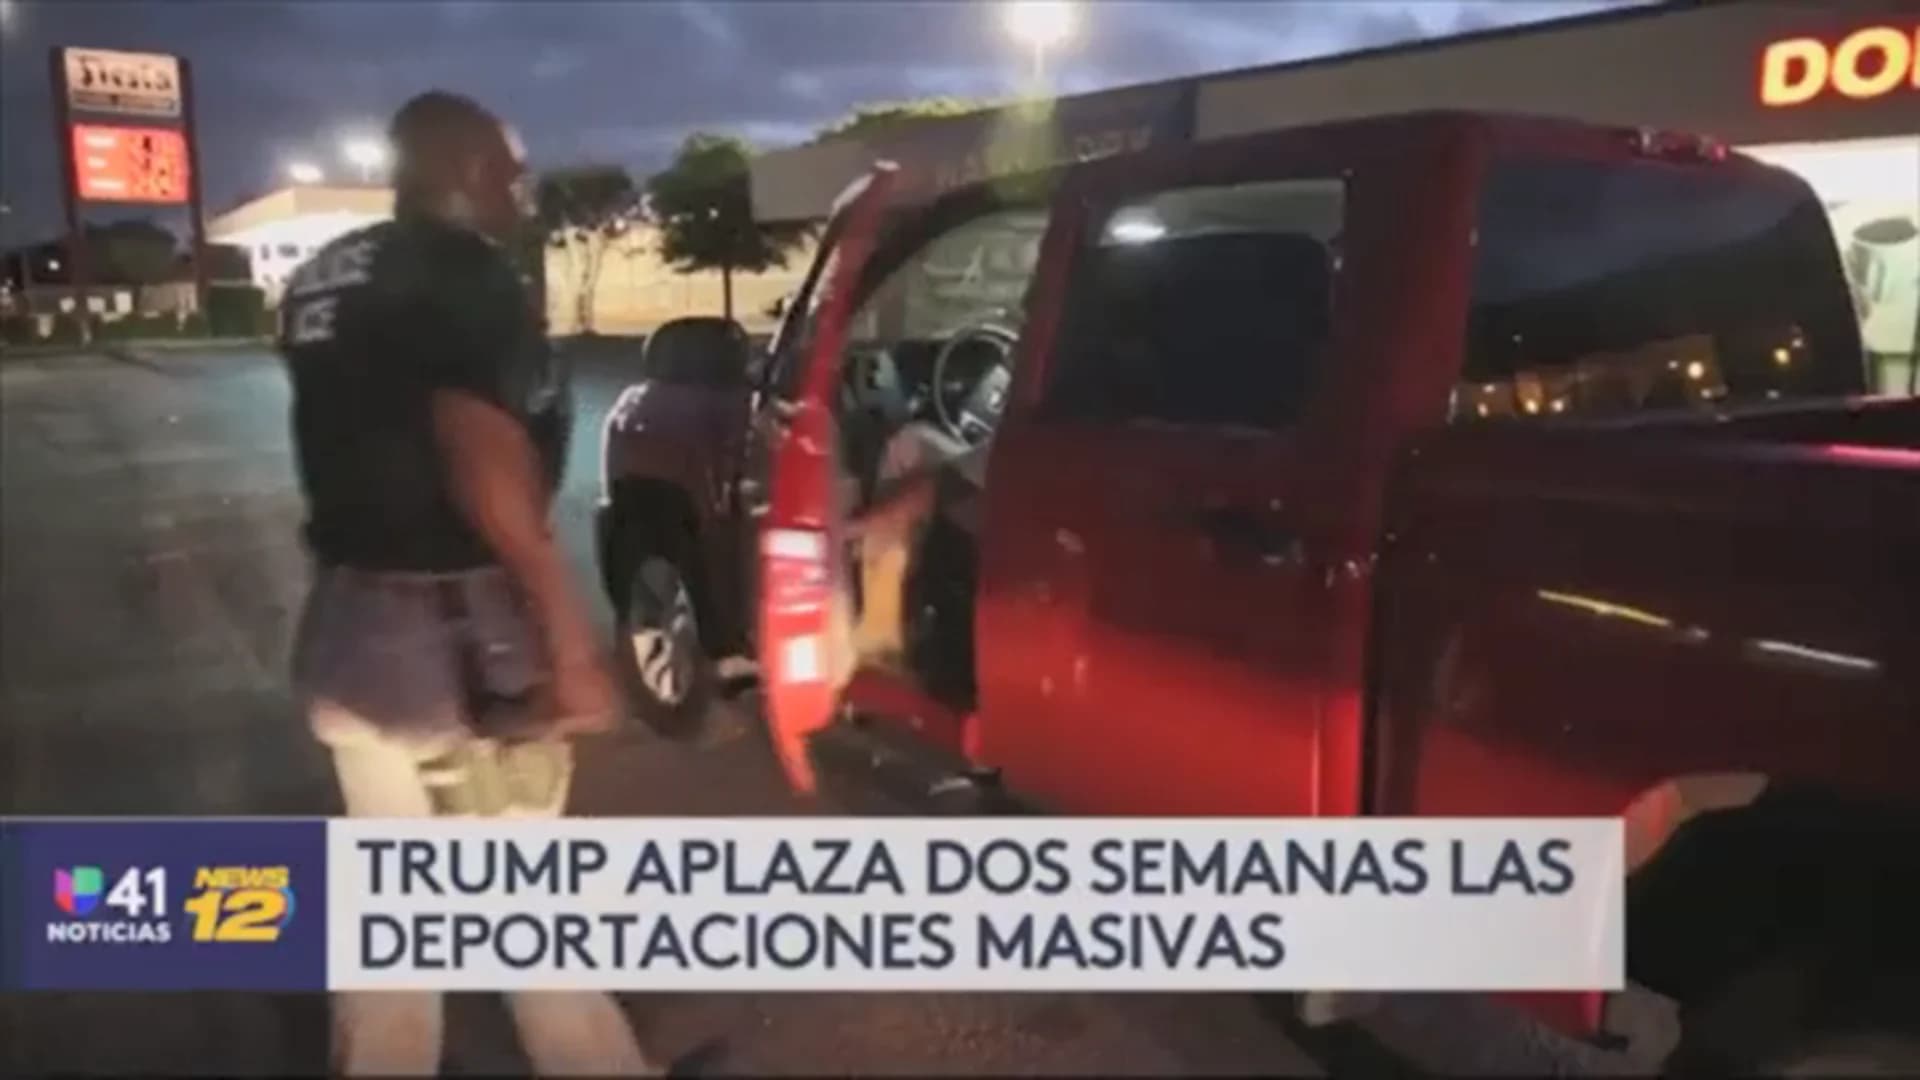 Univision 41 News Brief: Trump aplaza deportaciones